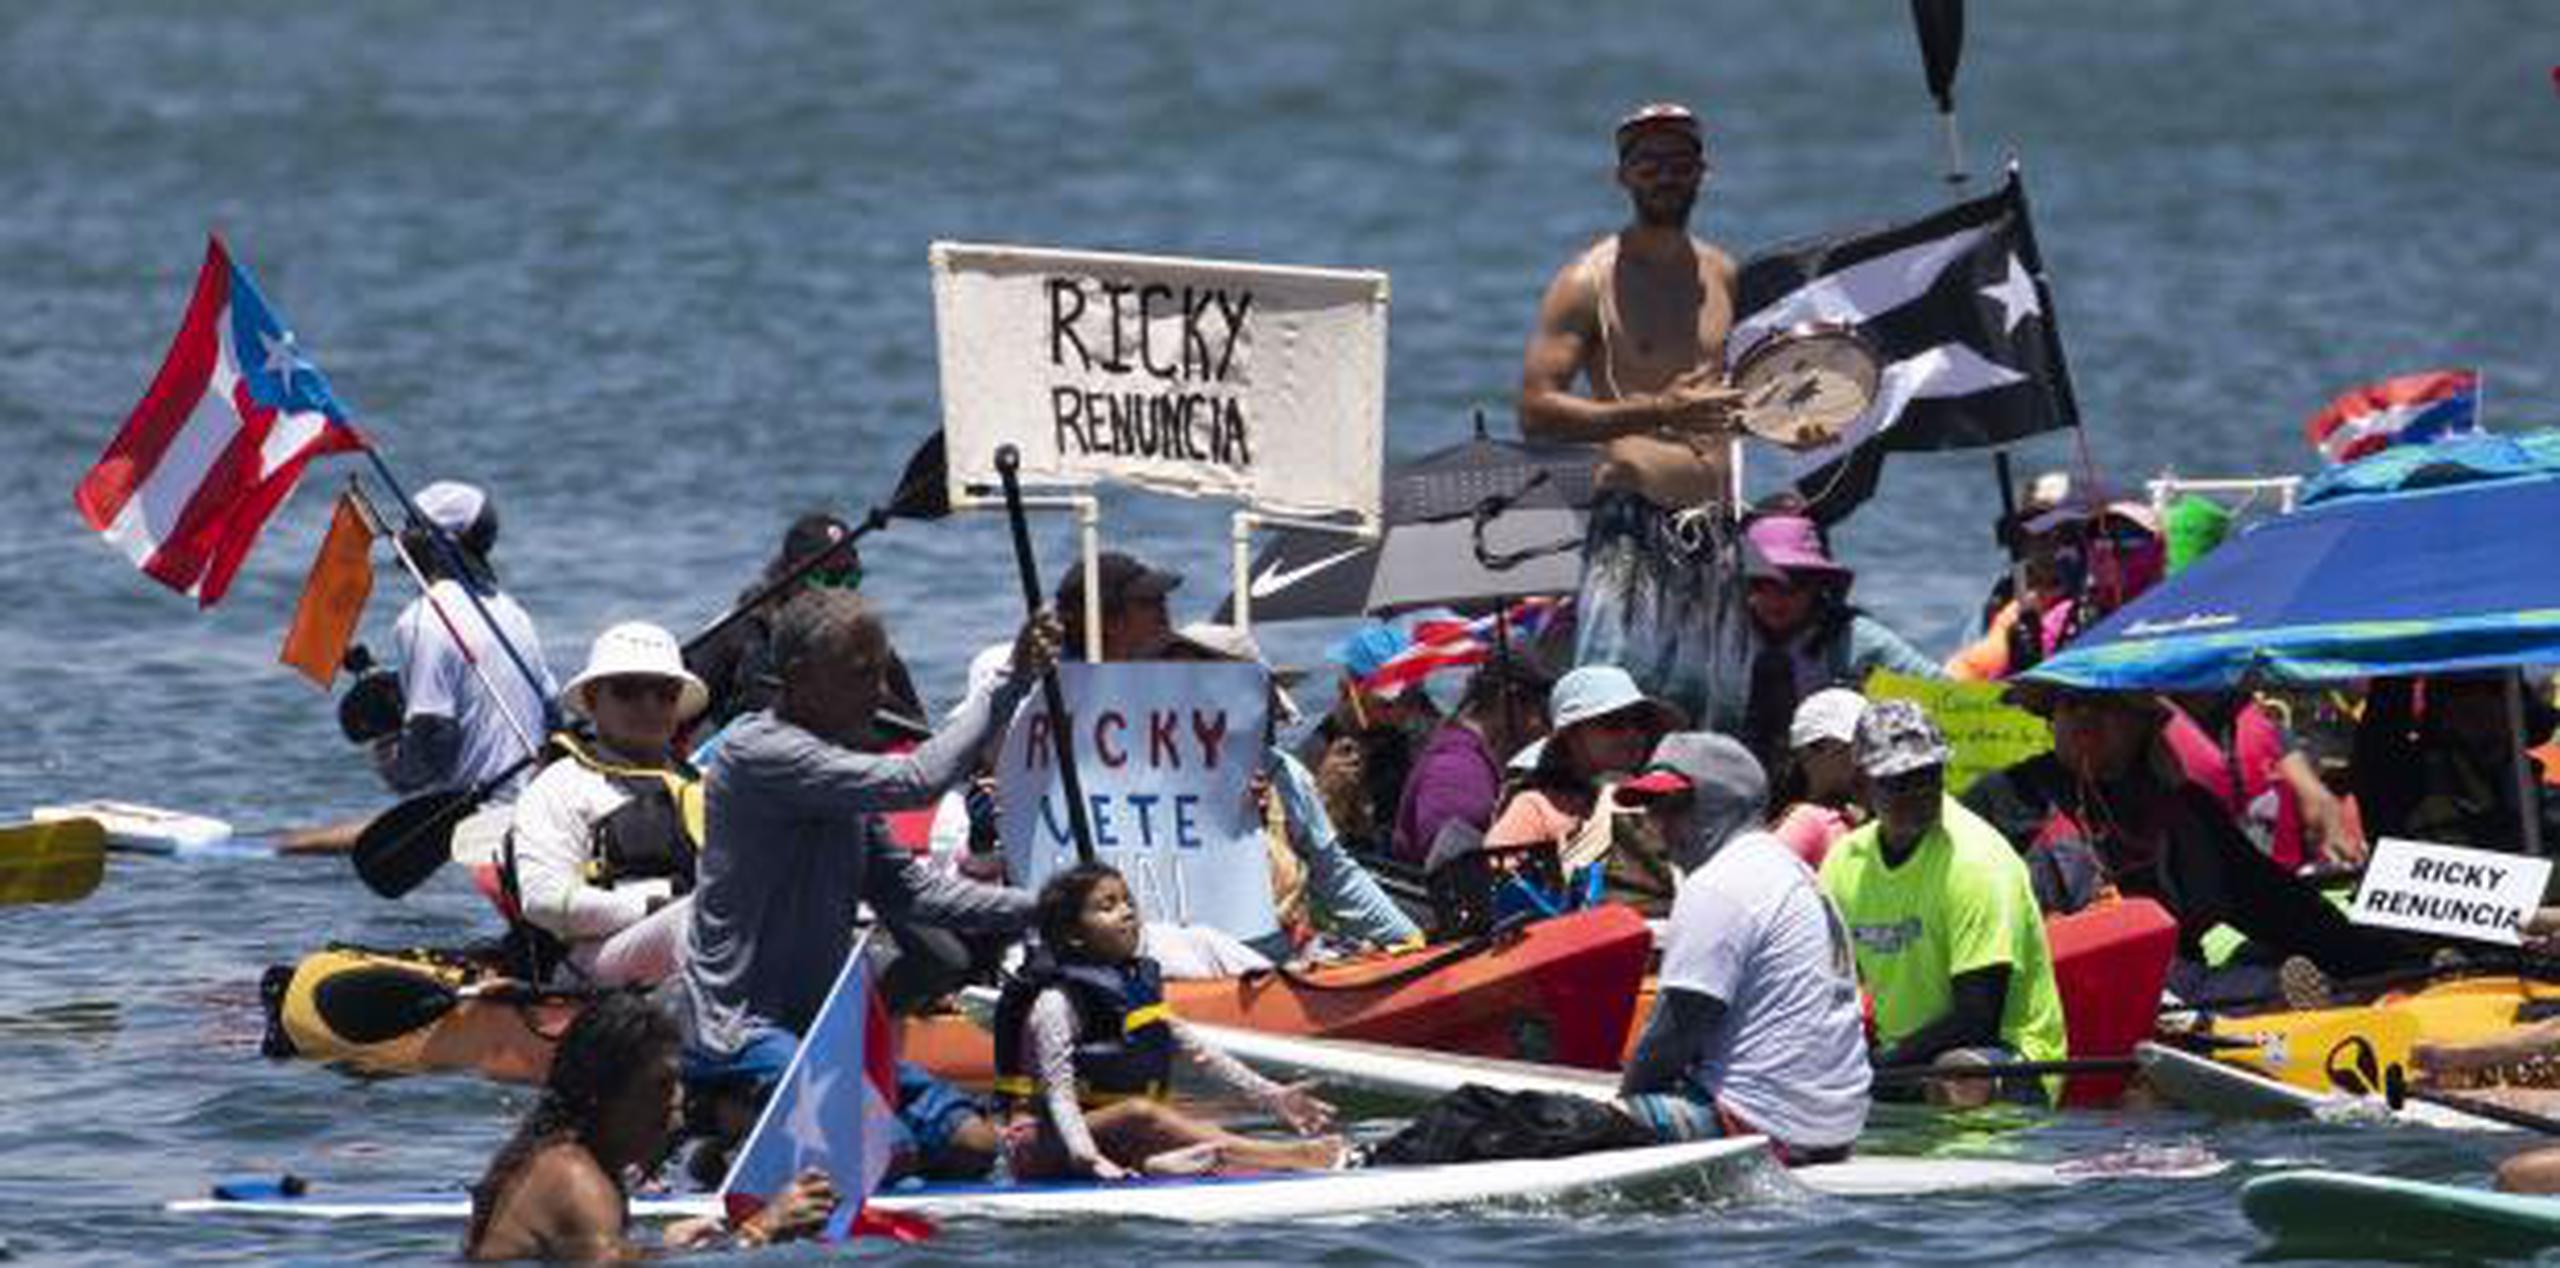 Kayaqueando en mi Puerto Rico, Aqua Sport, Grupo HP y Kayacampantes son otros de los grupos de kayakeros que se unieron a la manifestación que sobrepasó el centenar de kayaks en el agua. (david.villafane@gfrmedia)